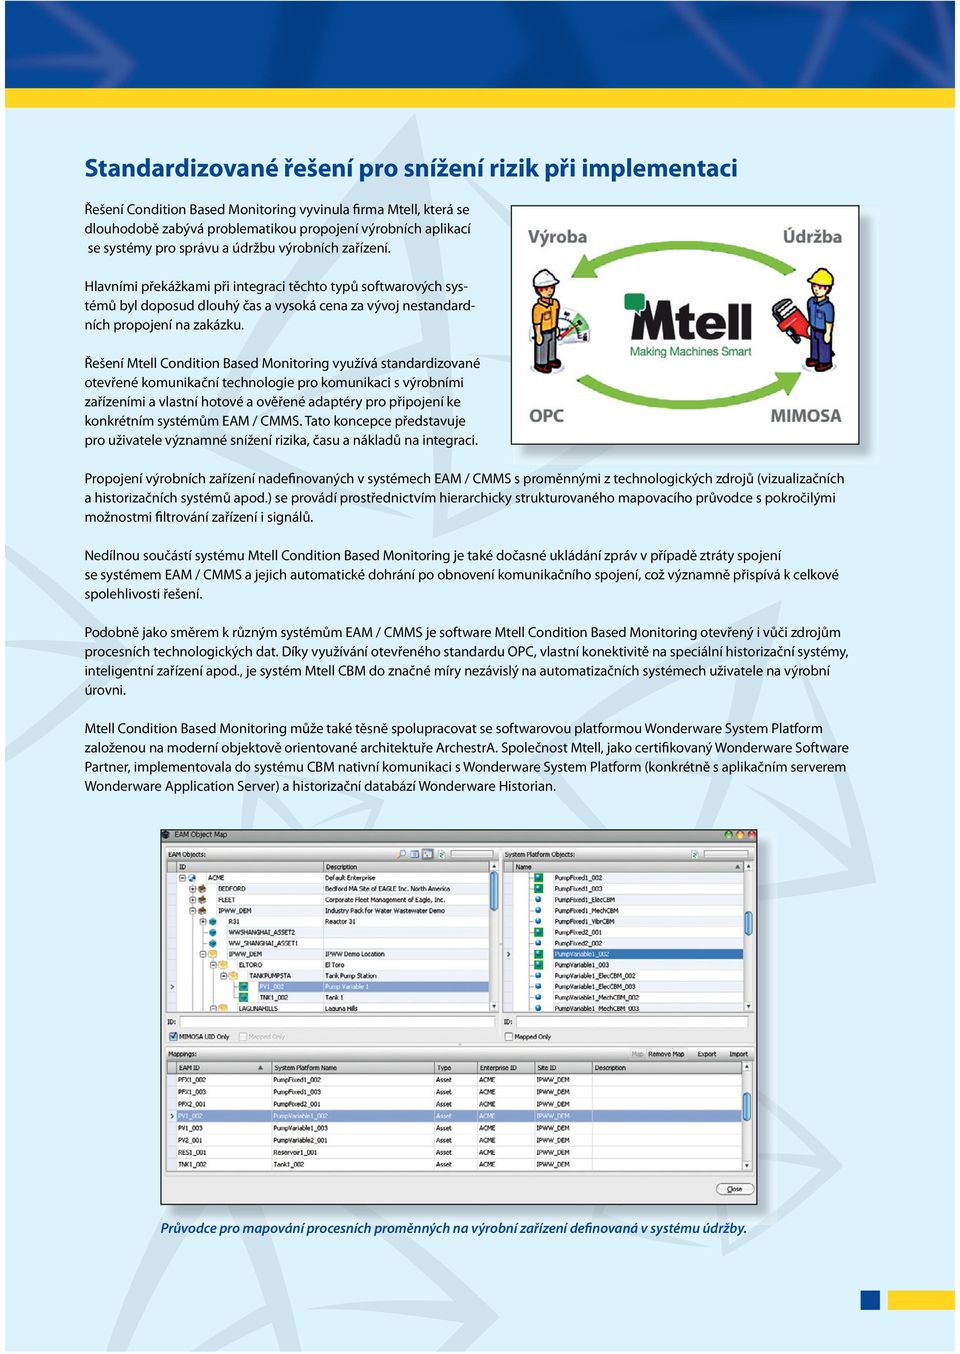 Řešení Mtell Condition Based Monitoring využívá standardizované otevřené komunikační technologie pro komunikaci s výrobními zařízeními a vlastní hotové a ověřené adaptéry pro připojení ke konkrétním